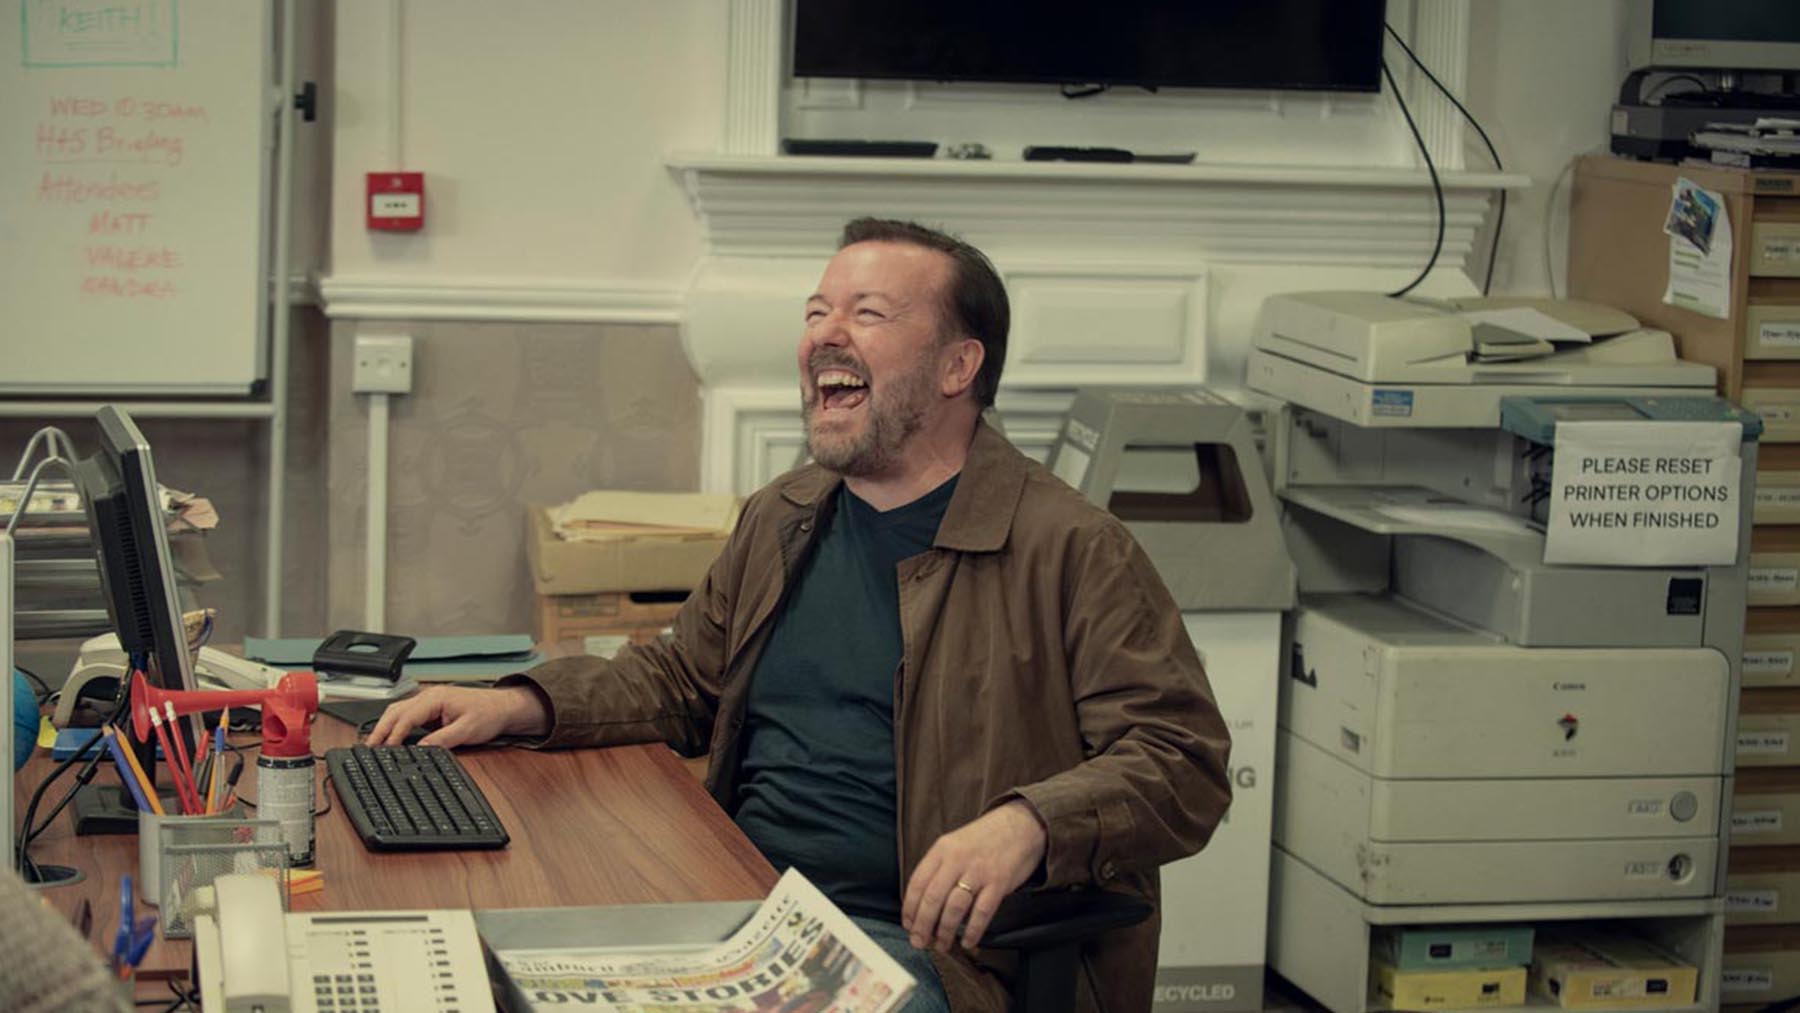 ¿Ricky Gervais en los Oscar 2022? Si le dan libertad está dispuesto a hacerlo gratis